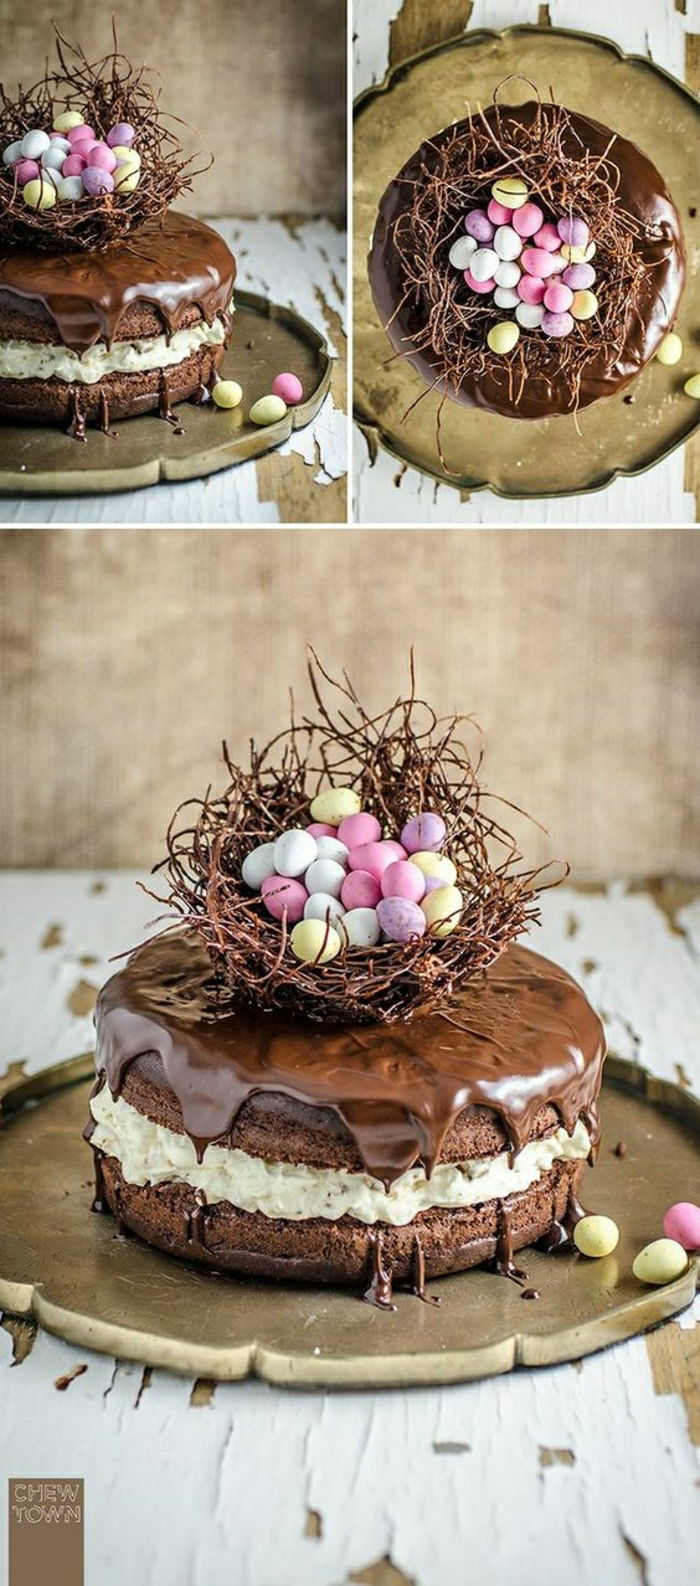 Čokoladna torta z velikonočnim motivom Velikonočna košara z majhnimi barvnimi jajci